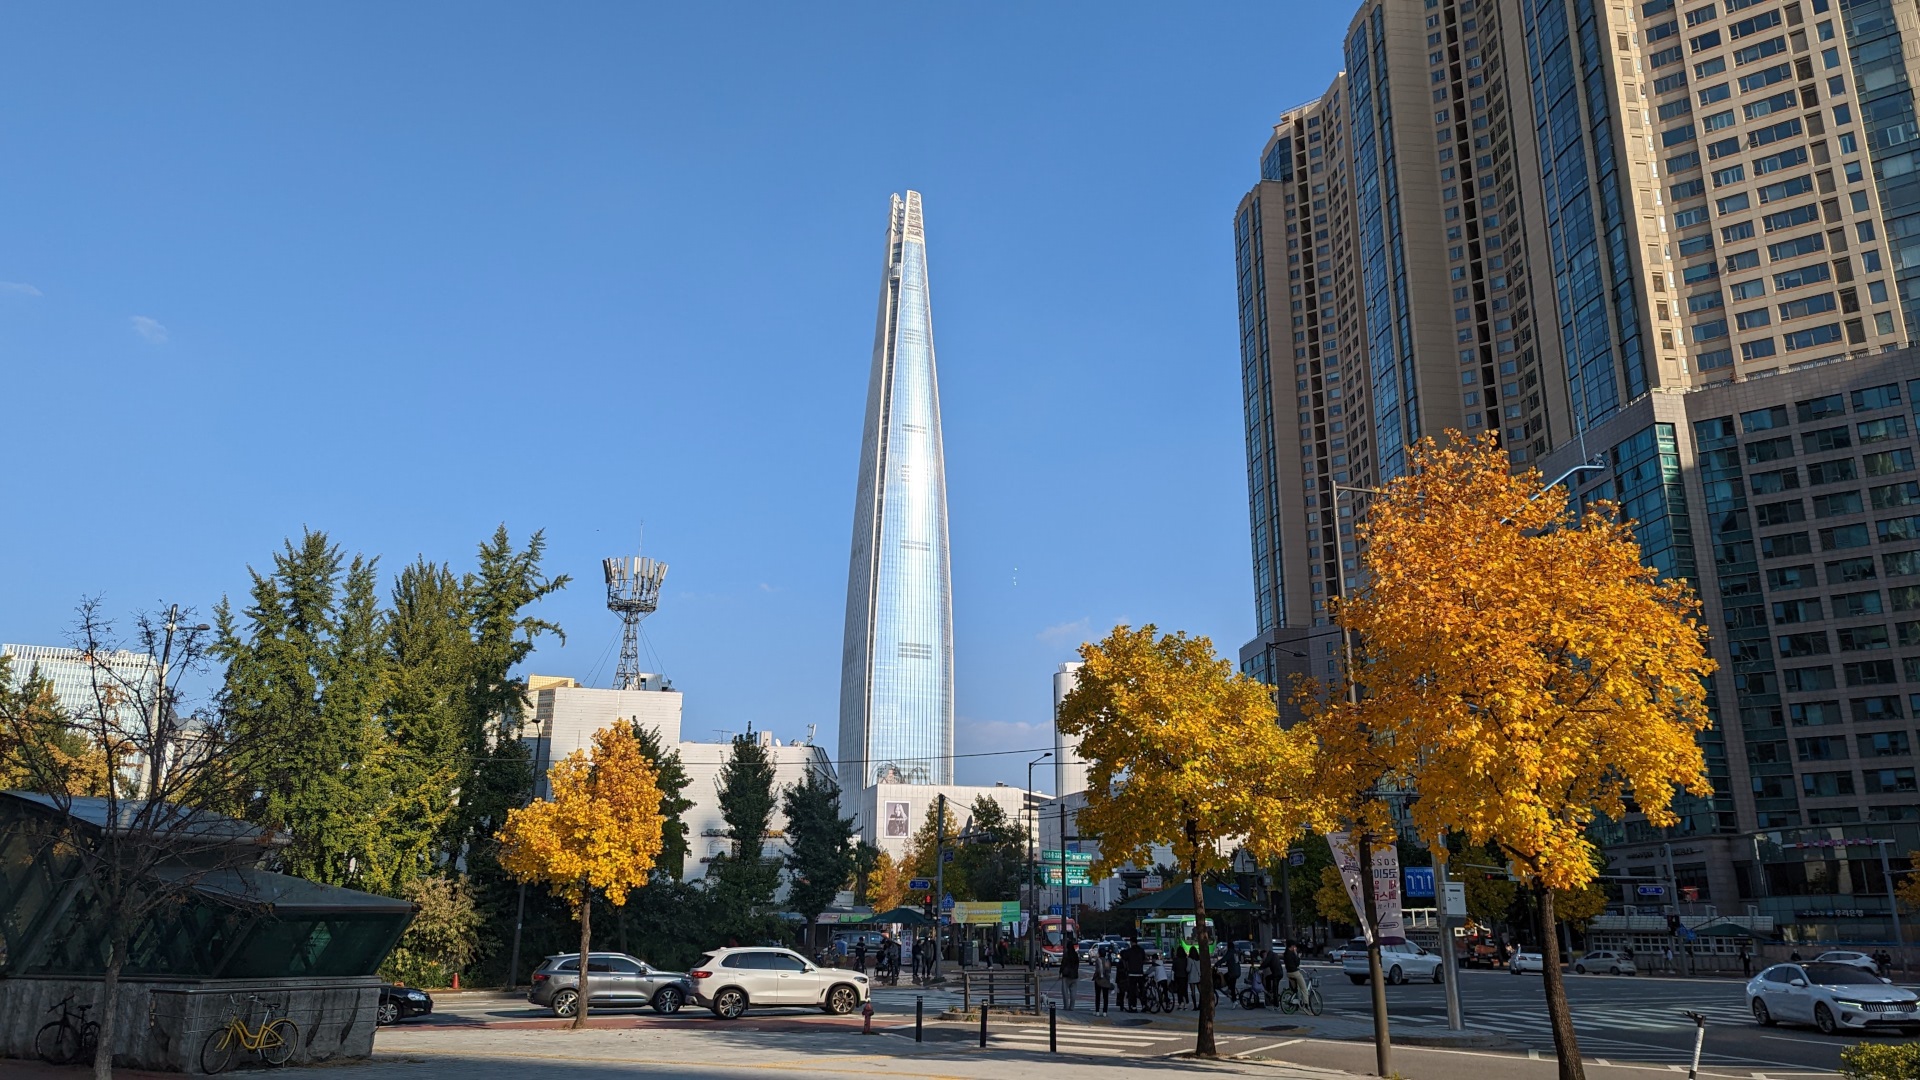 Seoul Sky at Lotte World in Seoul (Photo: invidis)